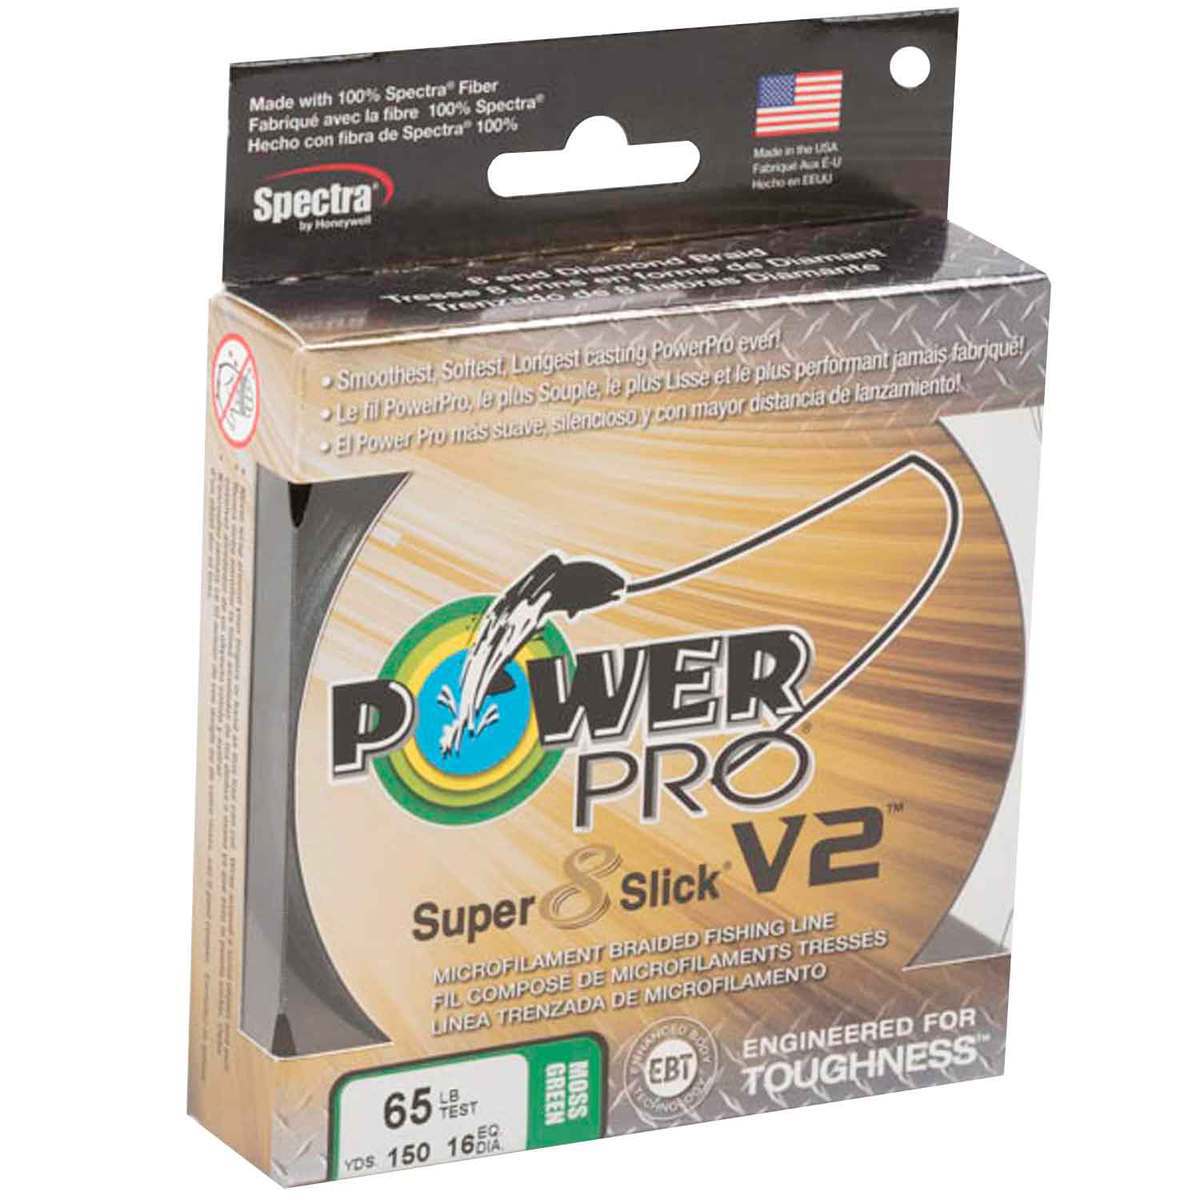 Power Pro Super Slick V2 Moss Green / 30lb